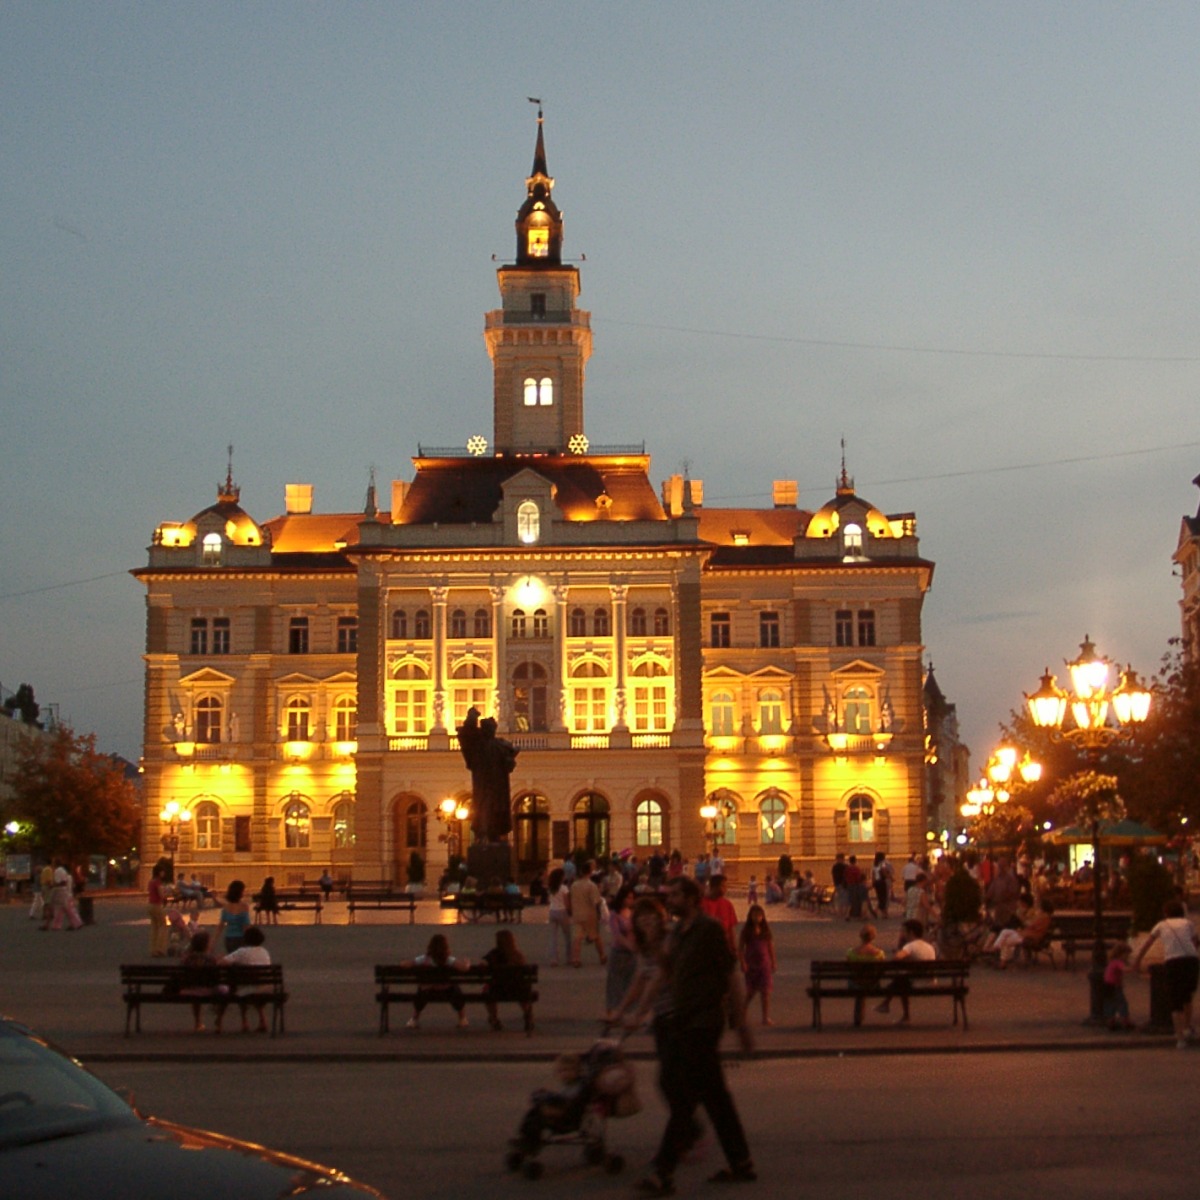 Neusatz Rathaus bei Nacht